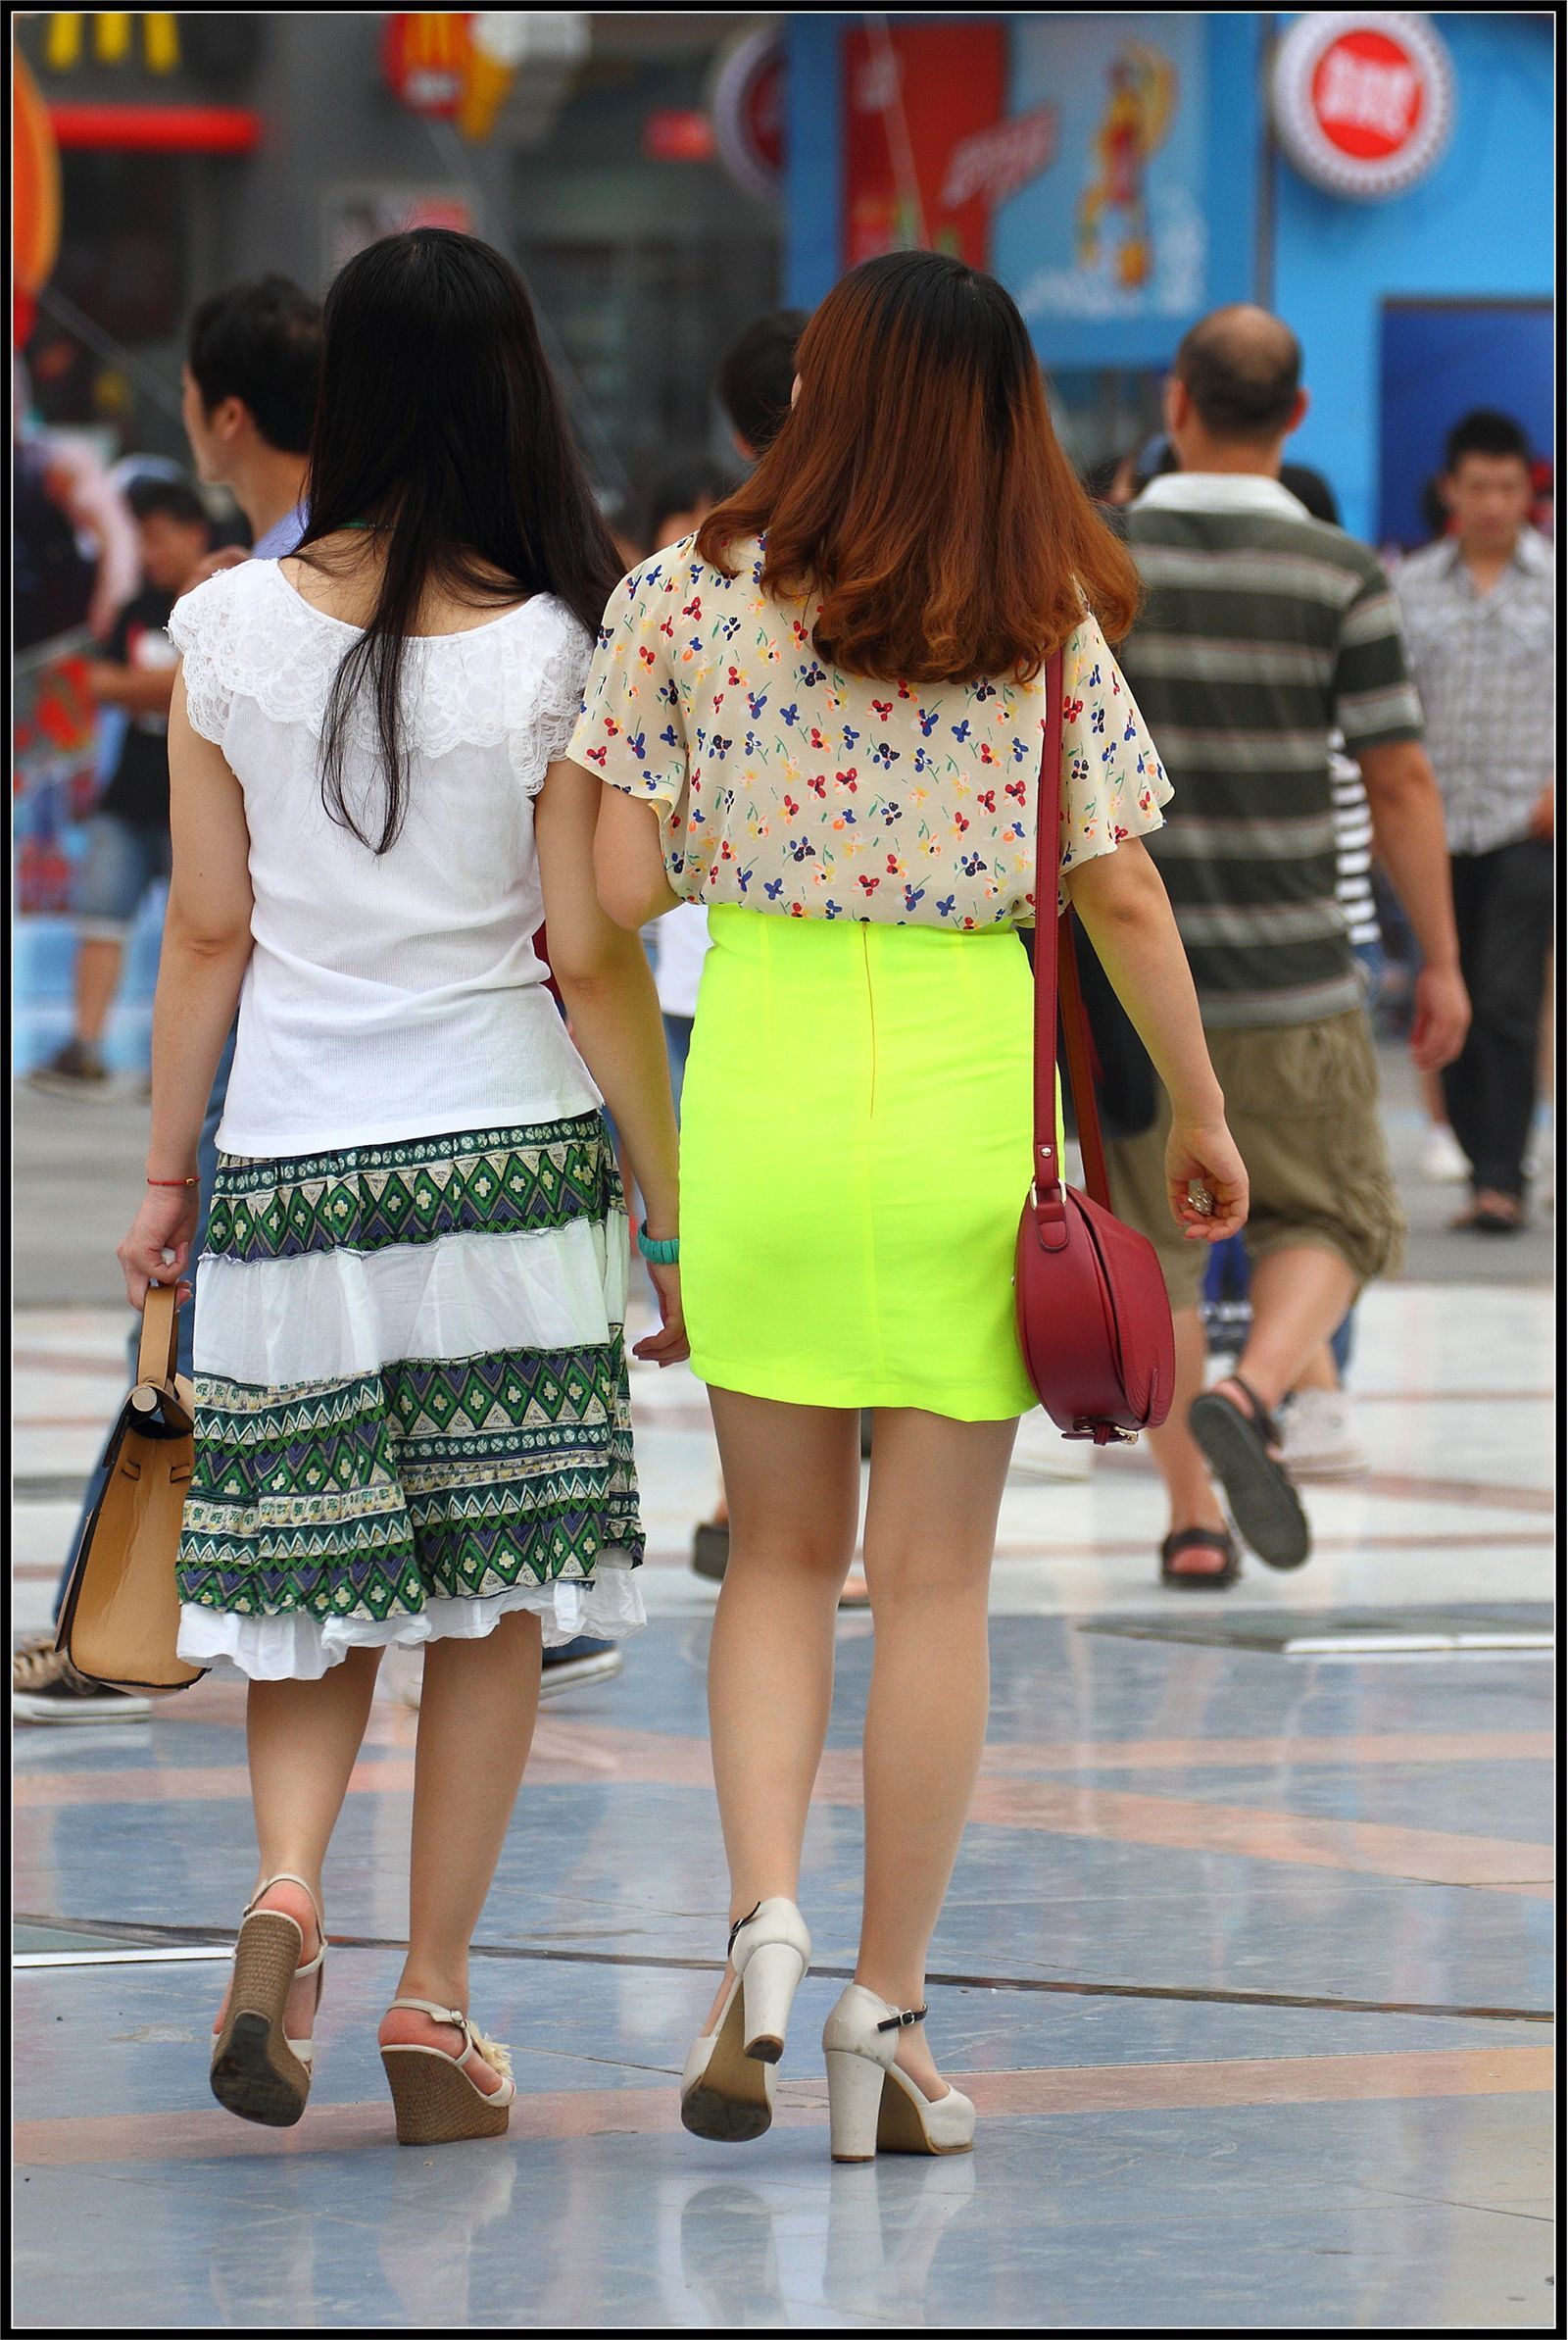 [户外街拍] 2013.10.04 绿色紧身裙裸腿美女